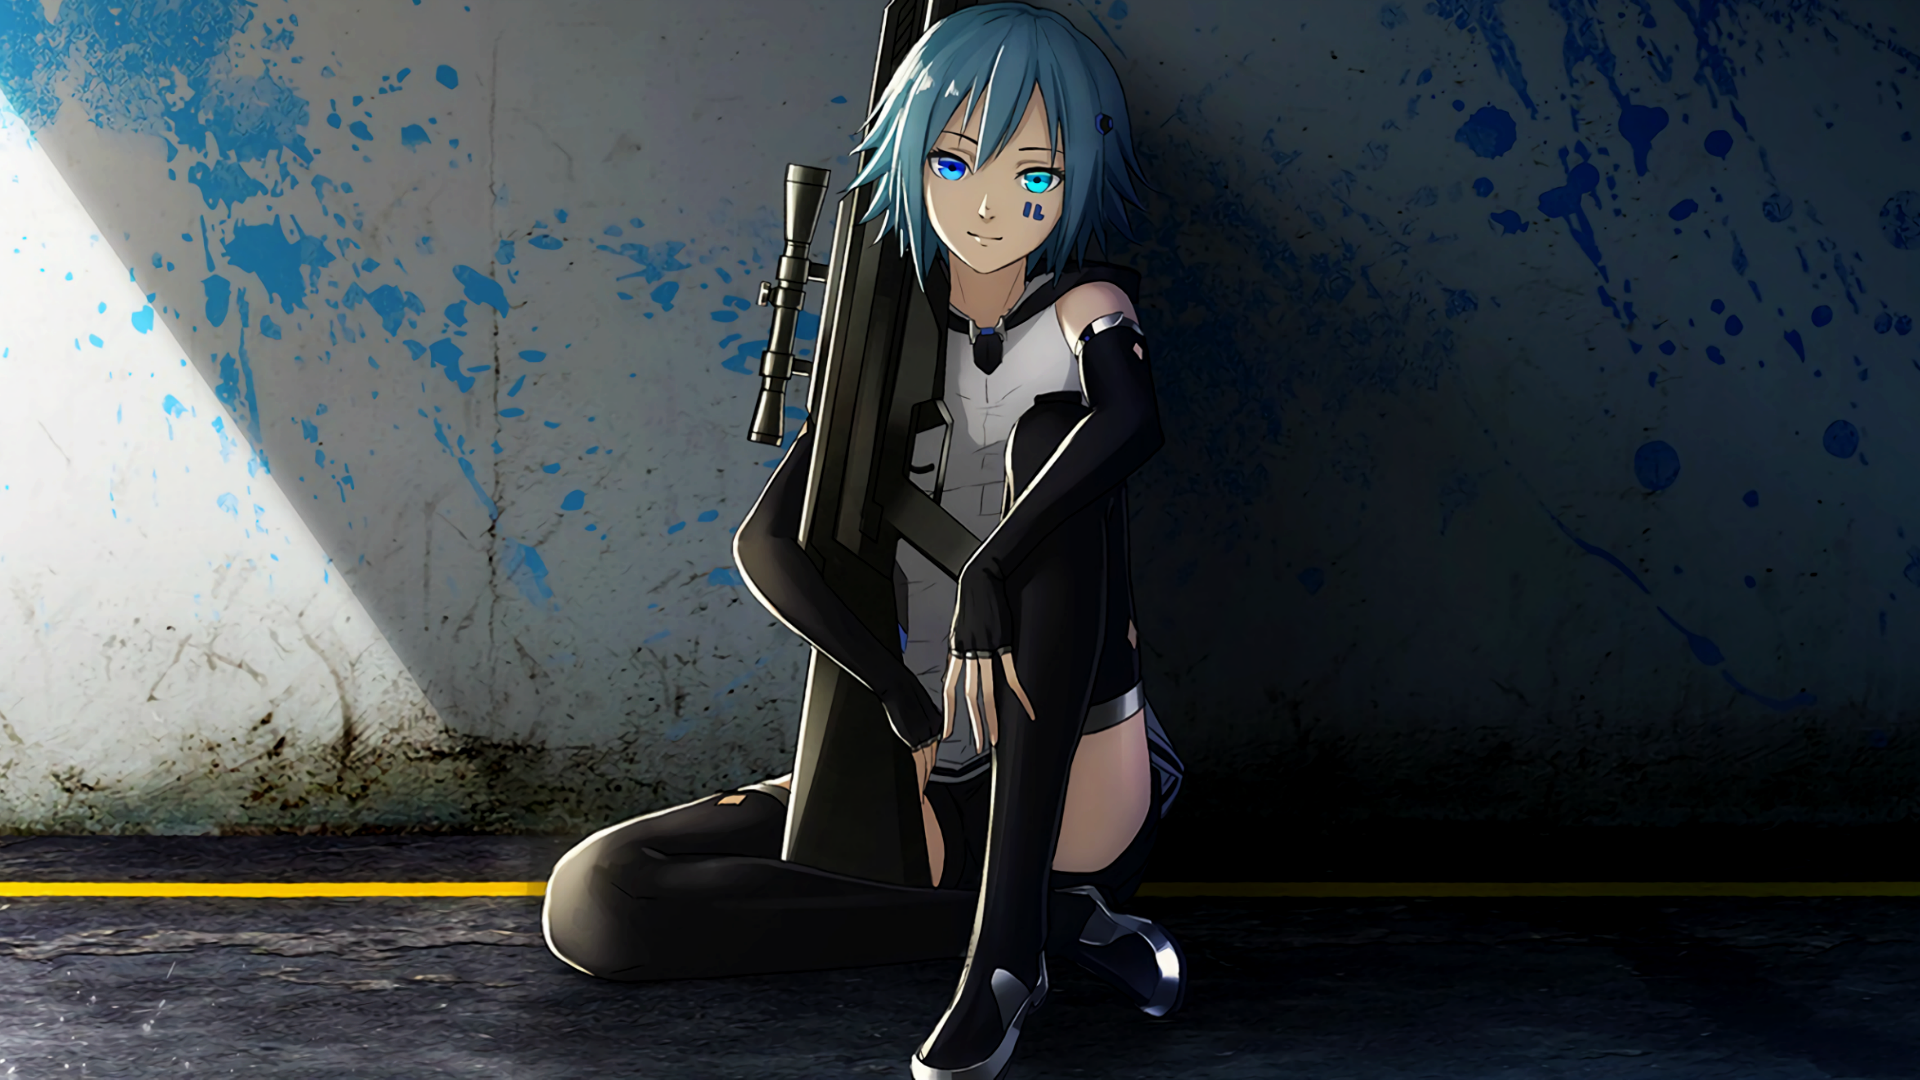 Anime 1920x1080 gun anime girls rifles sniper rifle blue hair weapon